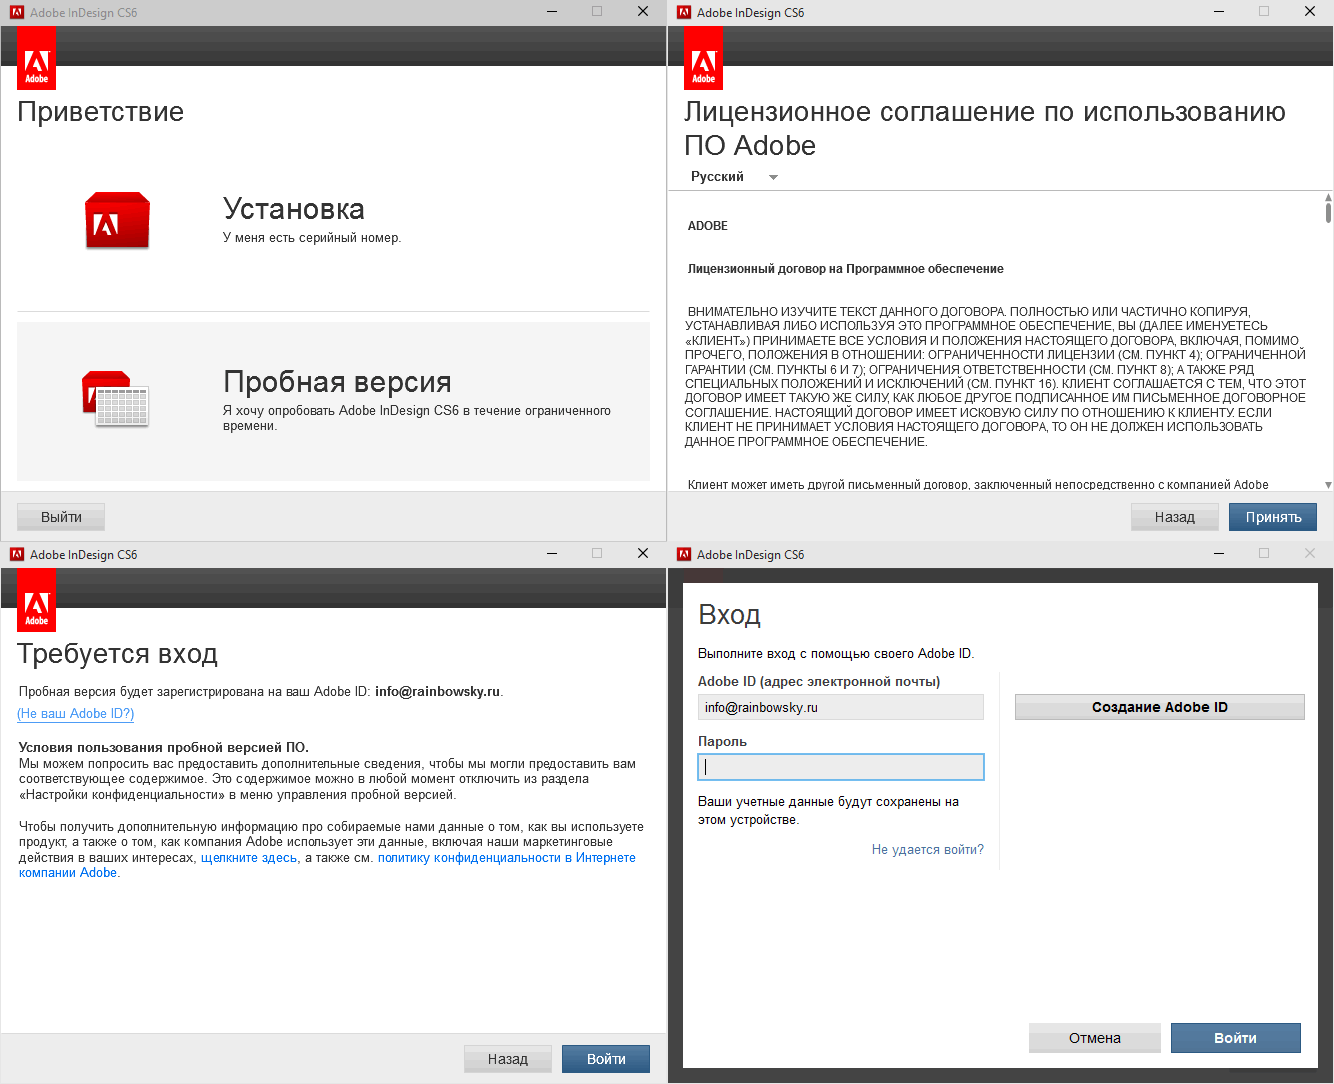 Adobe InDesign - установка бесплатной версии